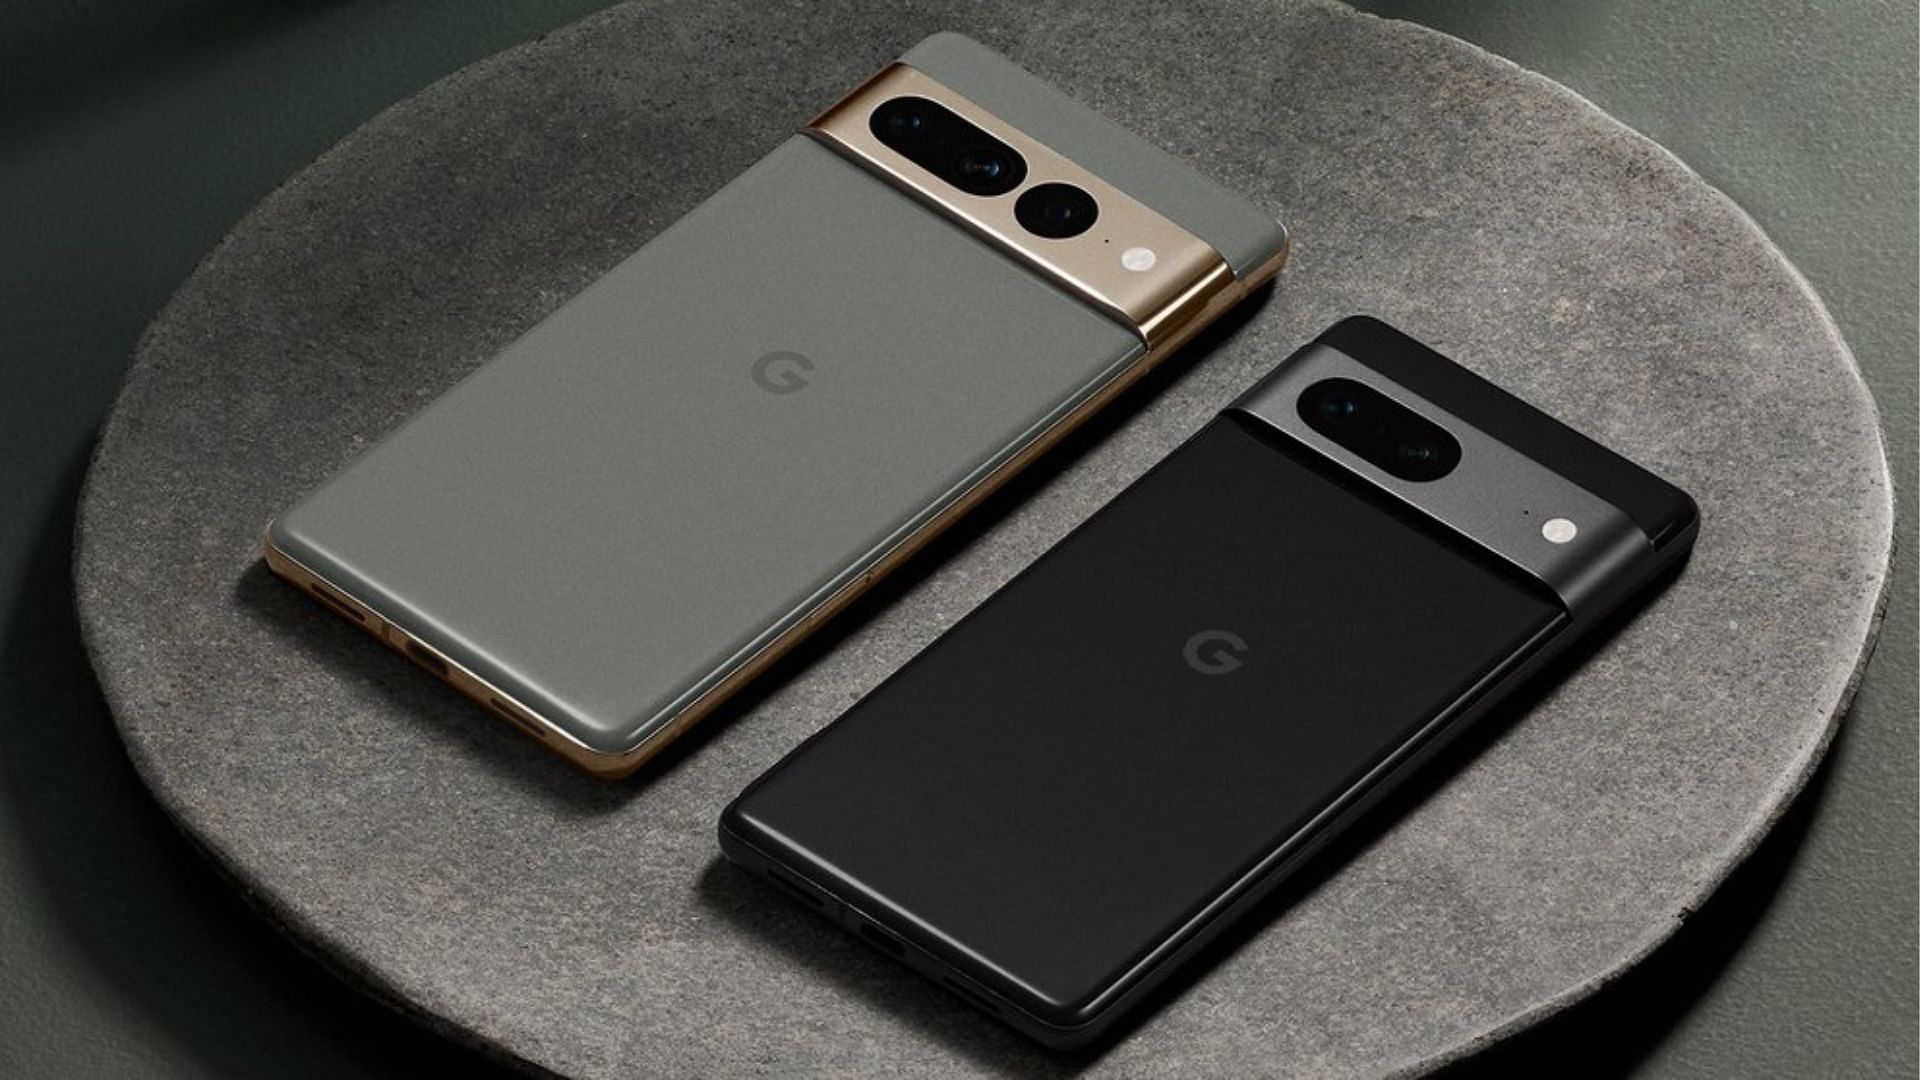 The Google Pixel 7 smartphones (Image via Google)